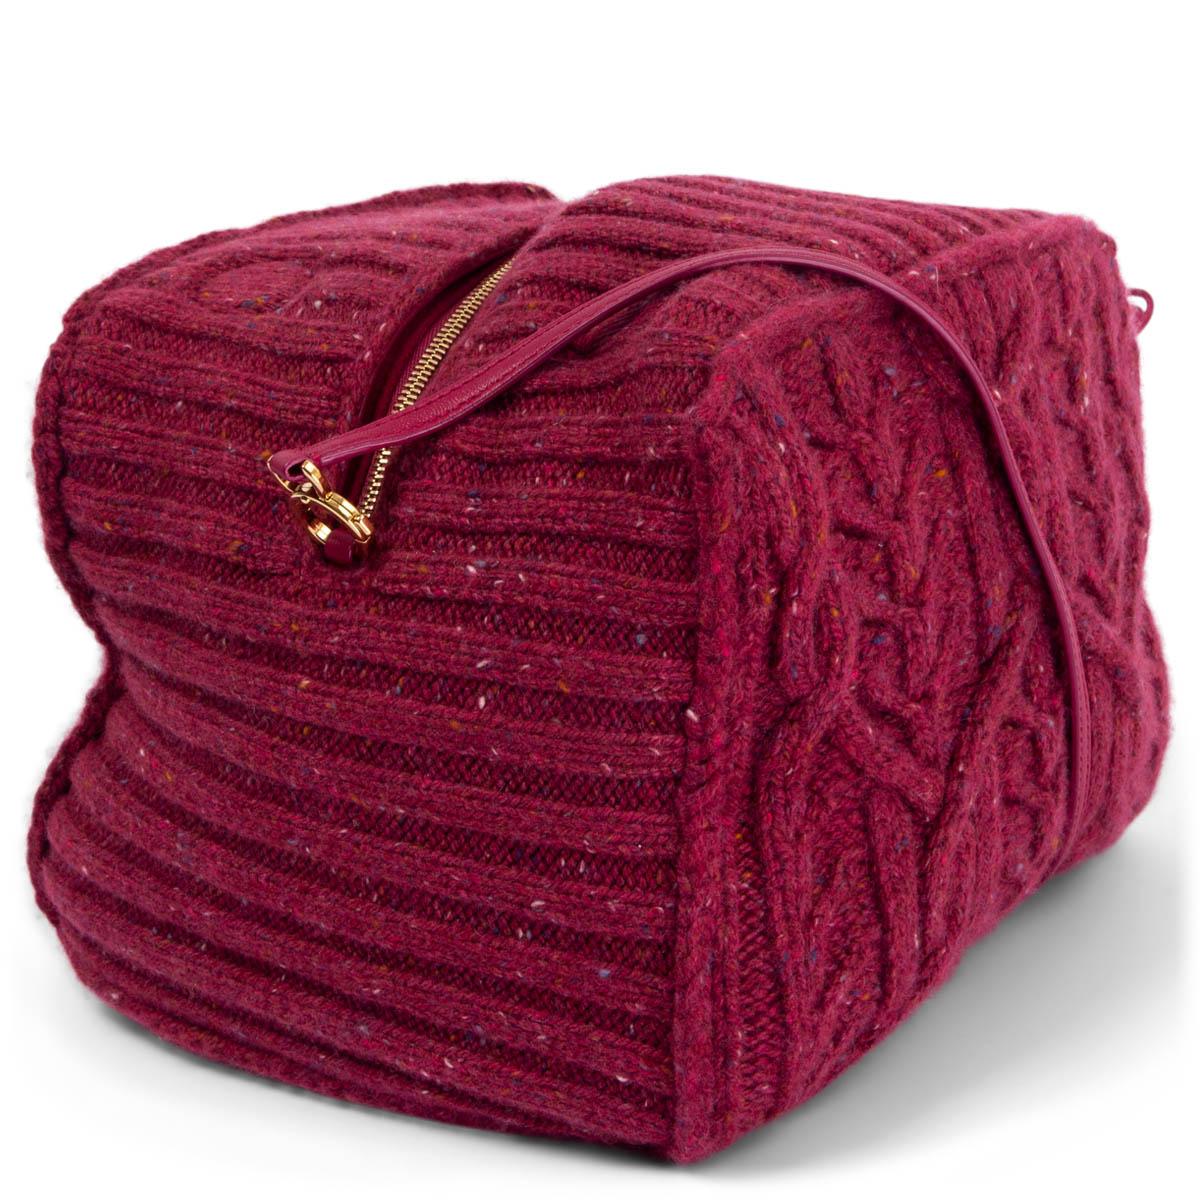 100% authentique Loro Piana Puffy Pouch en cachemire moucheté Fantasy Regalia Red (rouge framboise) tricoté avec des points de câble, et garni de perles en bois artisanales. Pour accéder facilement à vos essentiels, laissez la fermeture éclair